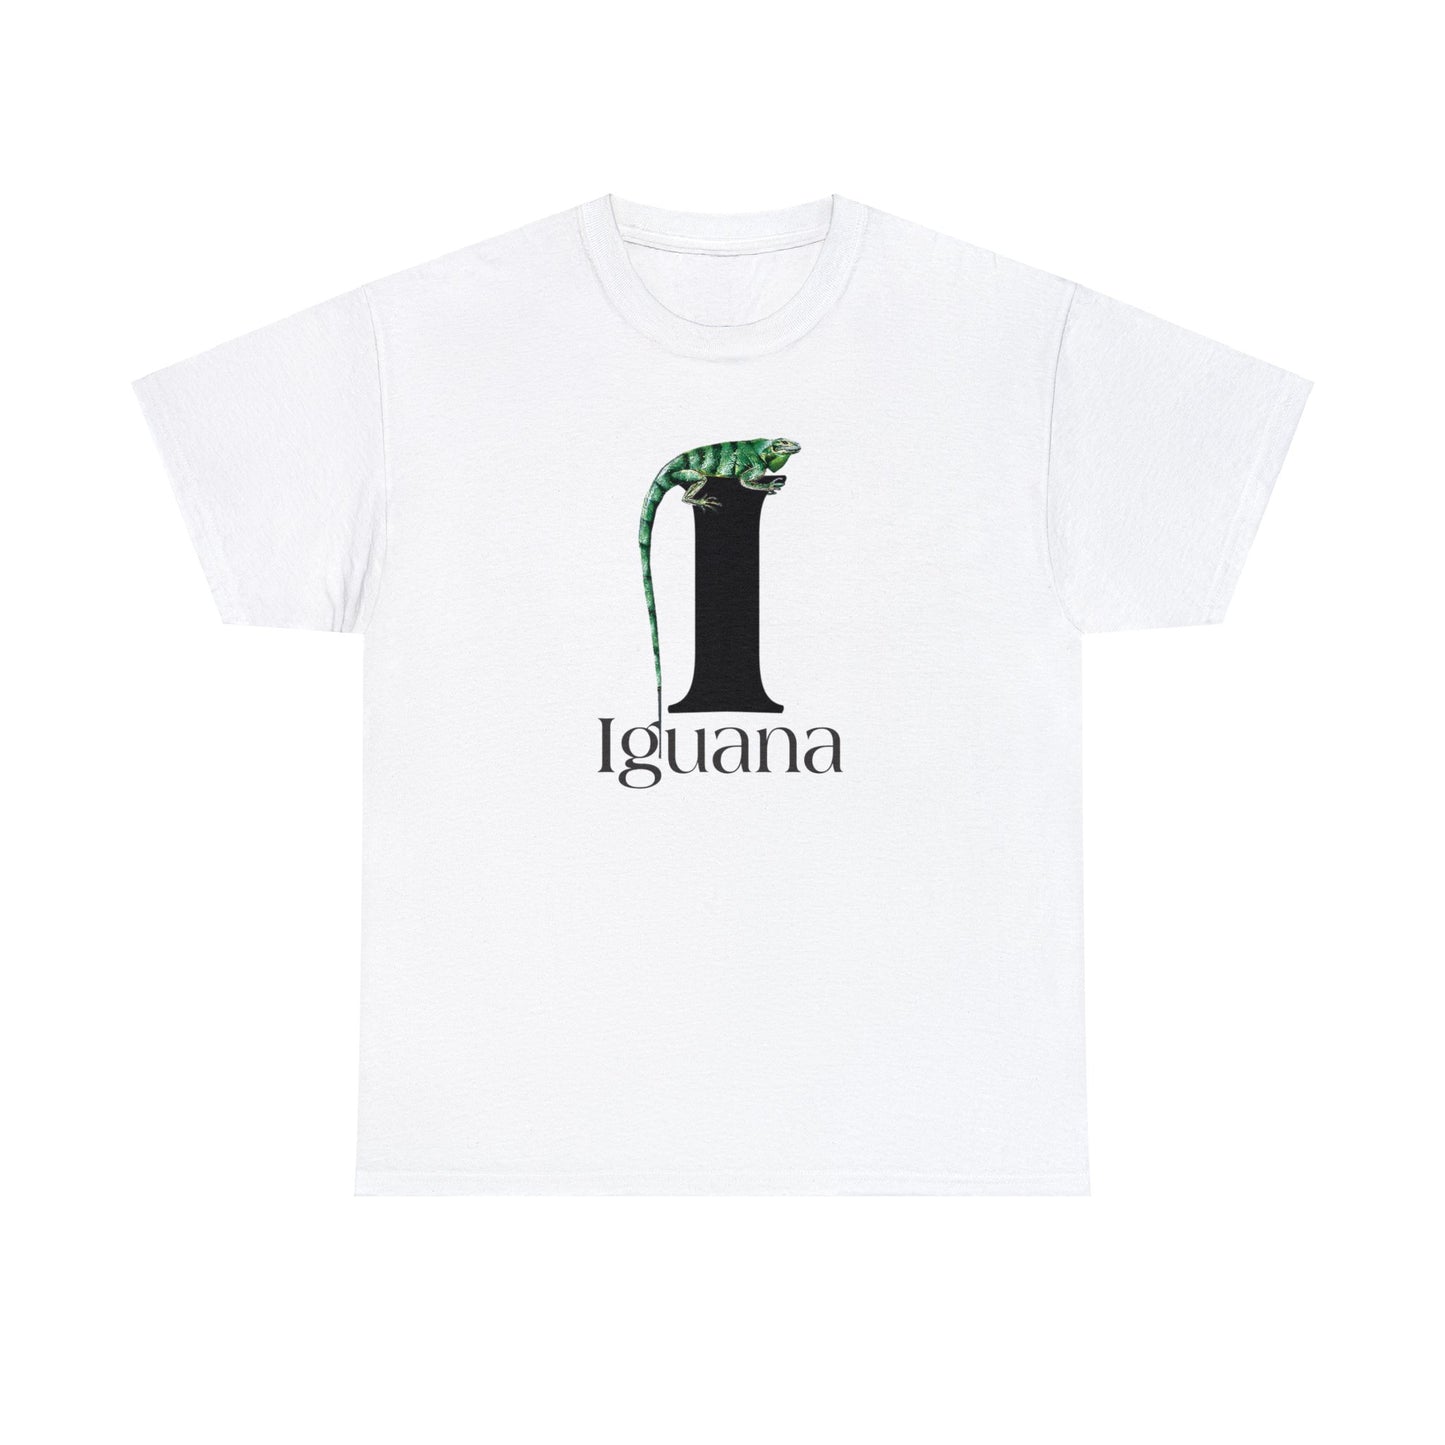 I is for Iguana, Iguana Perched on Letter I, Iguana Lovers, Iguana Drawing T-Shirt, animal t-shirt